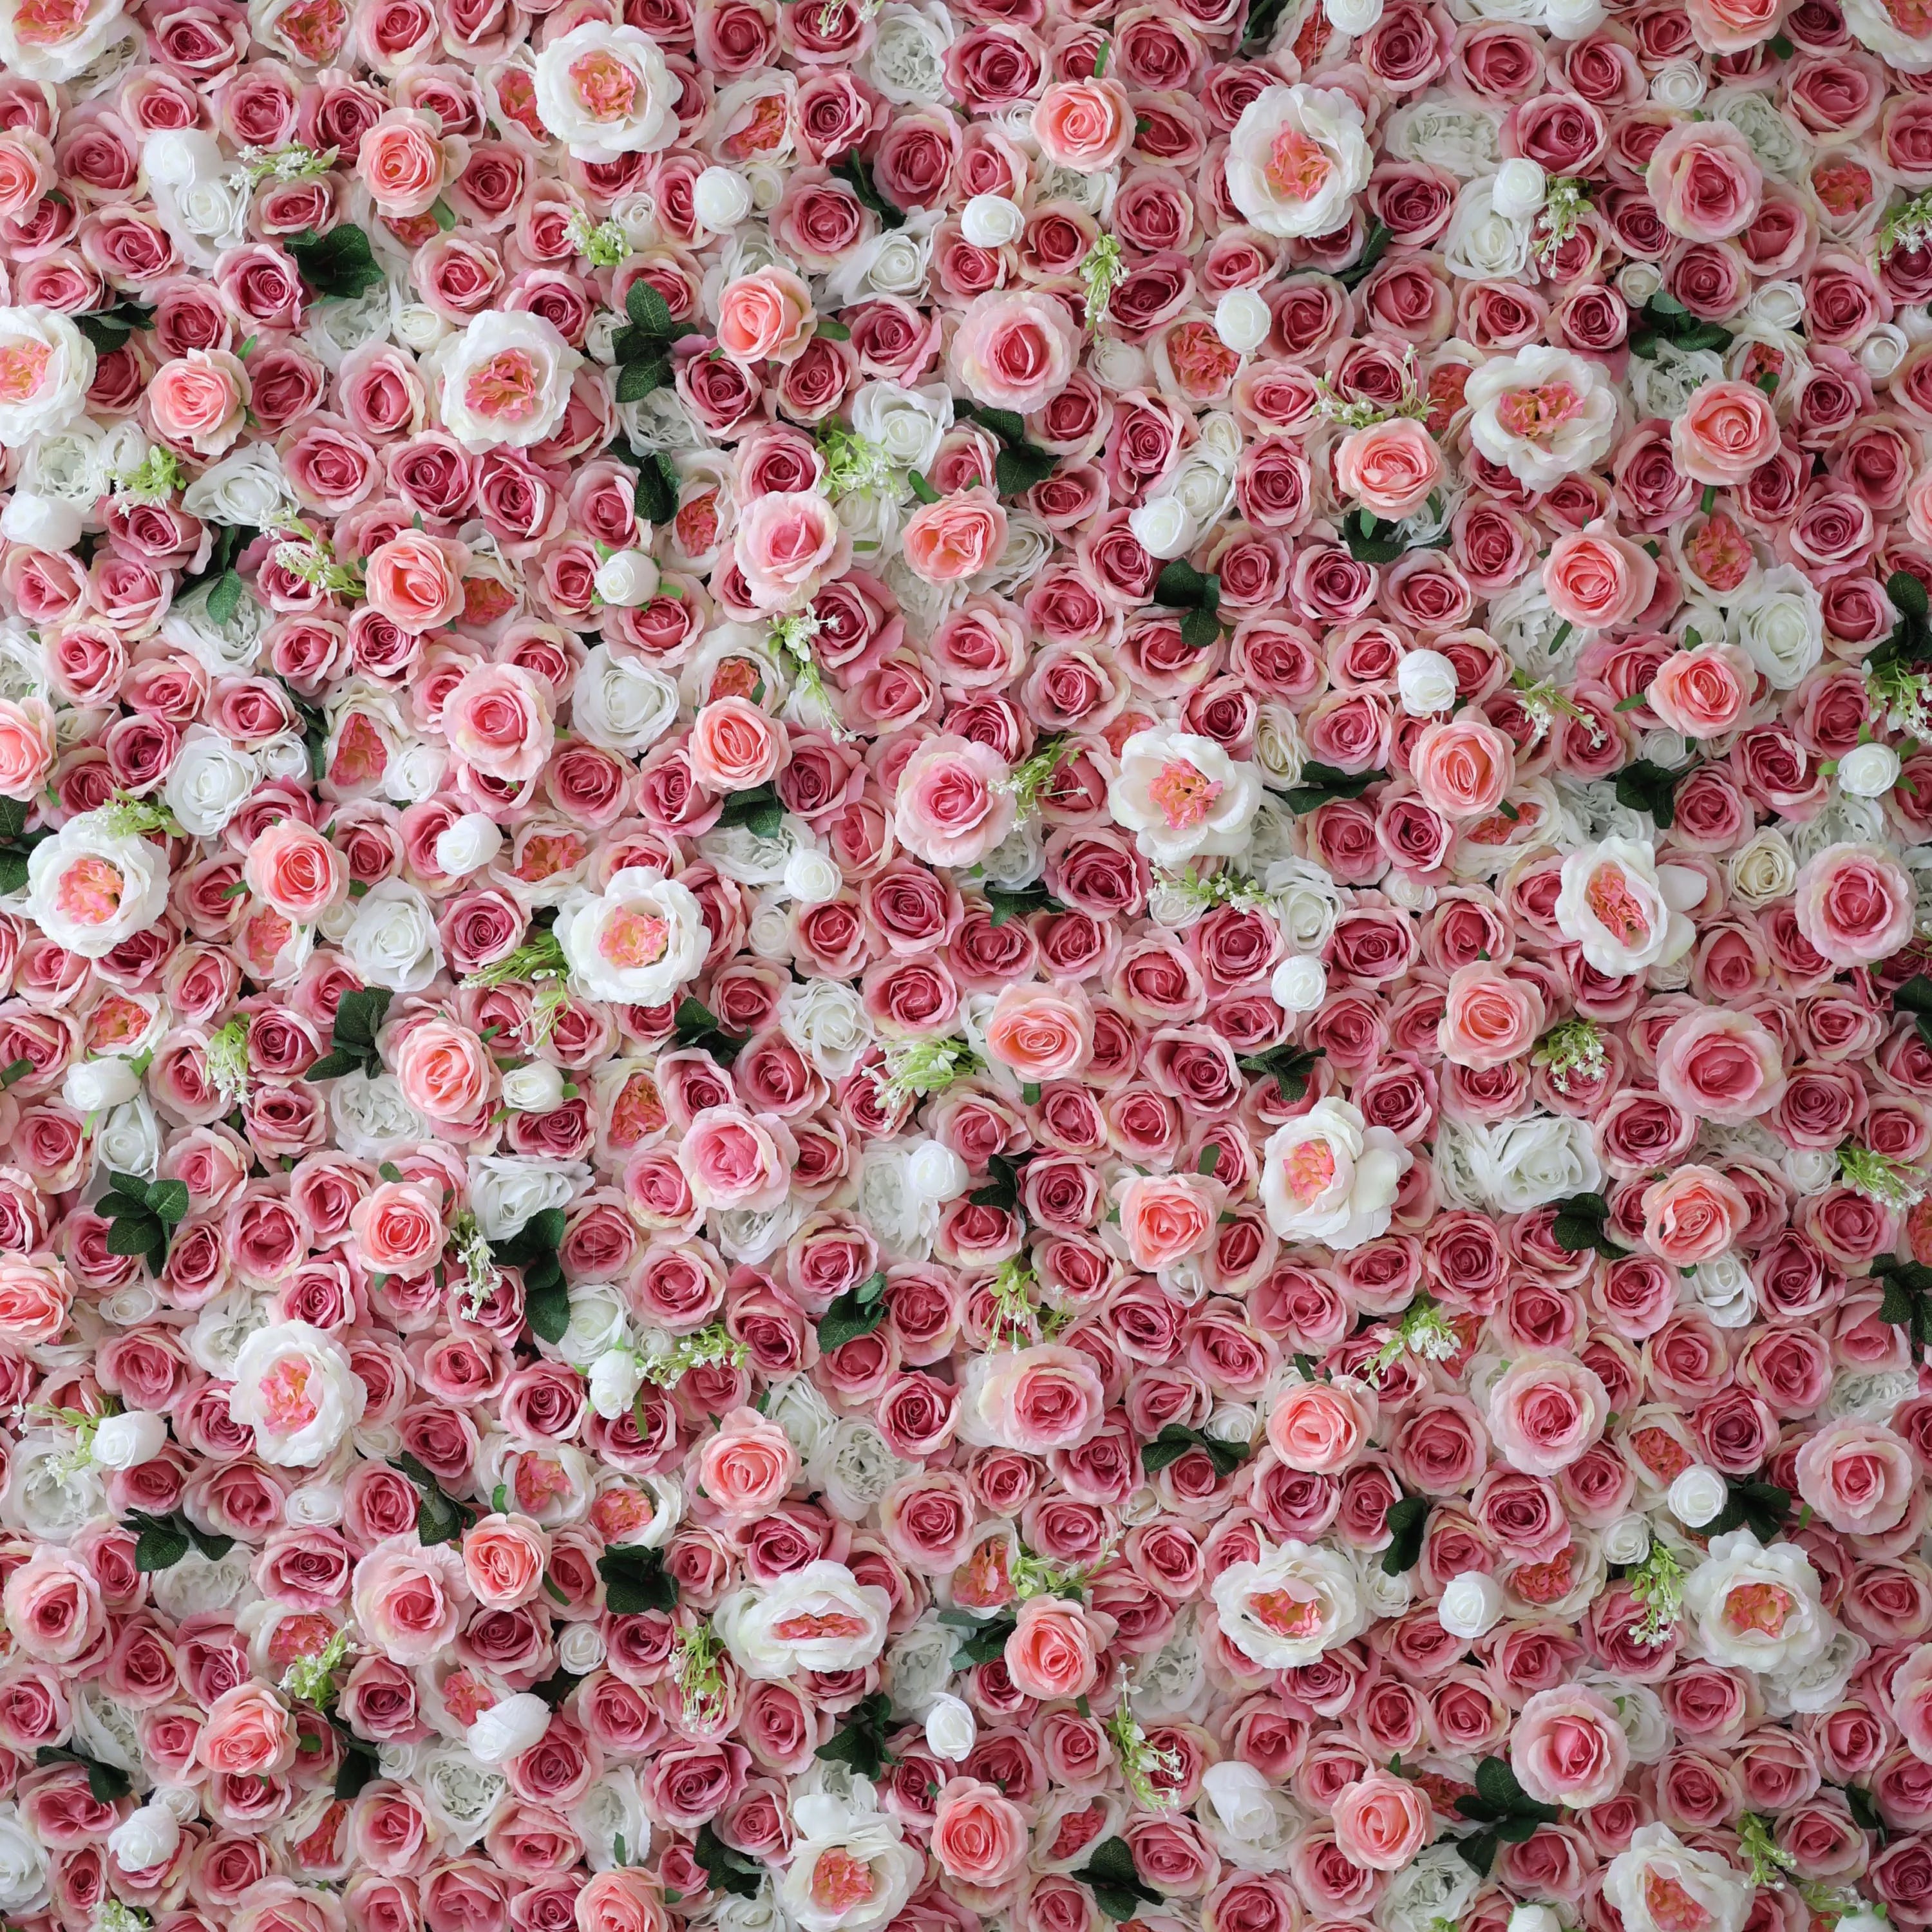 هدايا زهور فالار: جدار زهرة النسيج الاصطناعي الخالد-عرض مشع للوردي